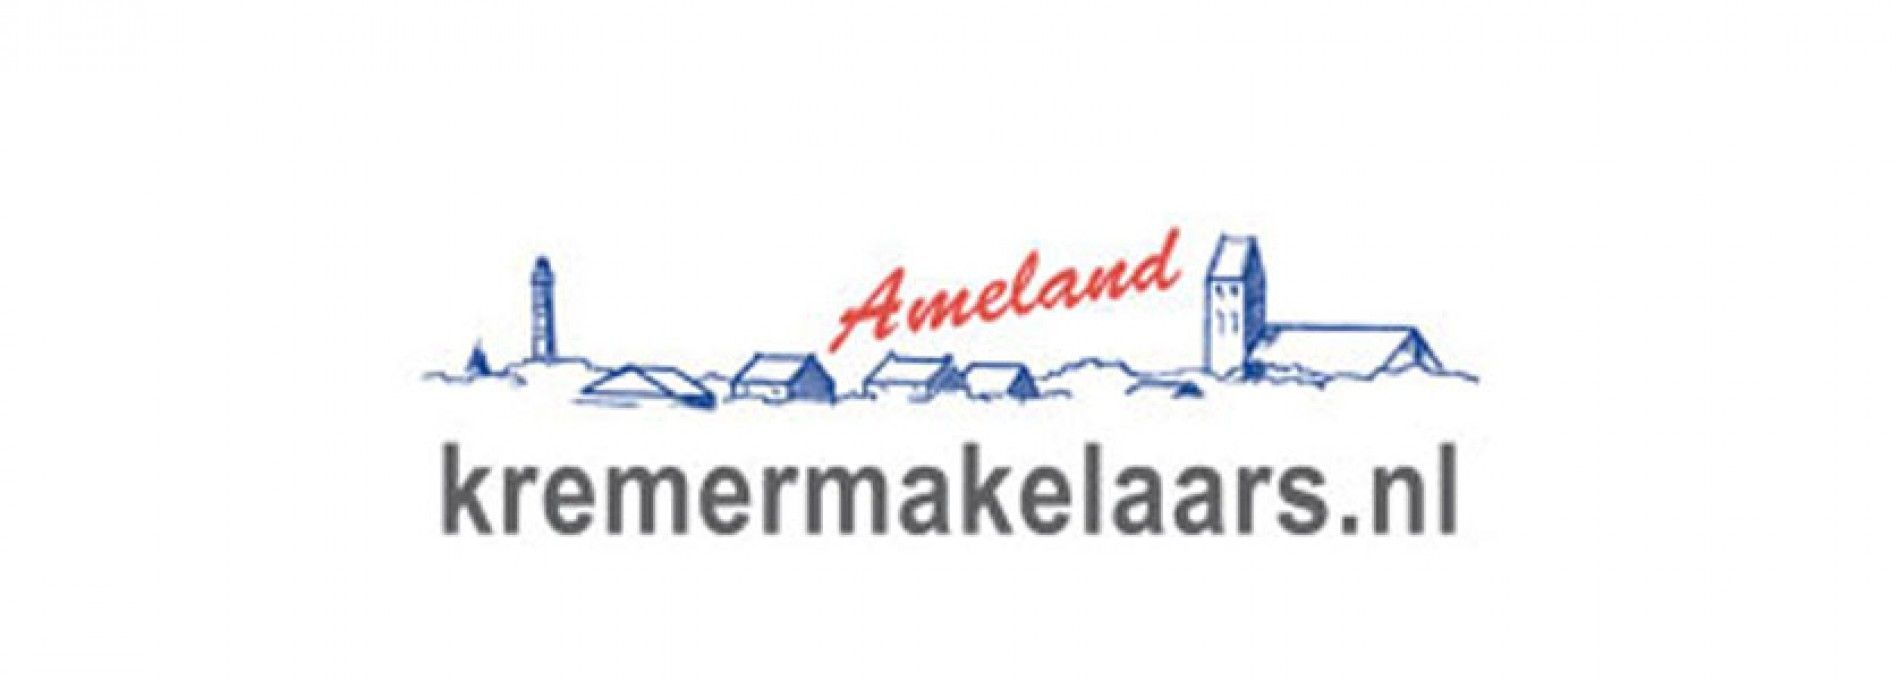 Kremermakelaars.nl Ameland